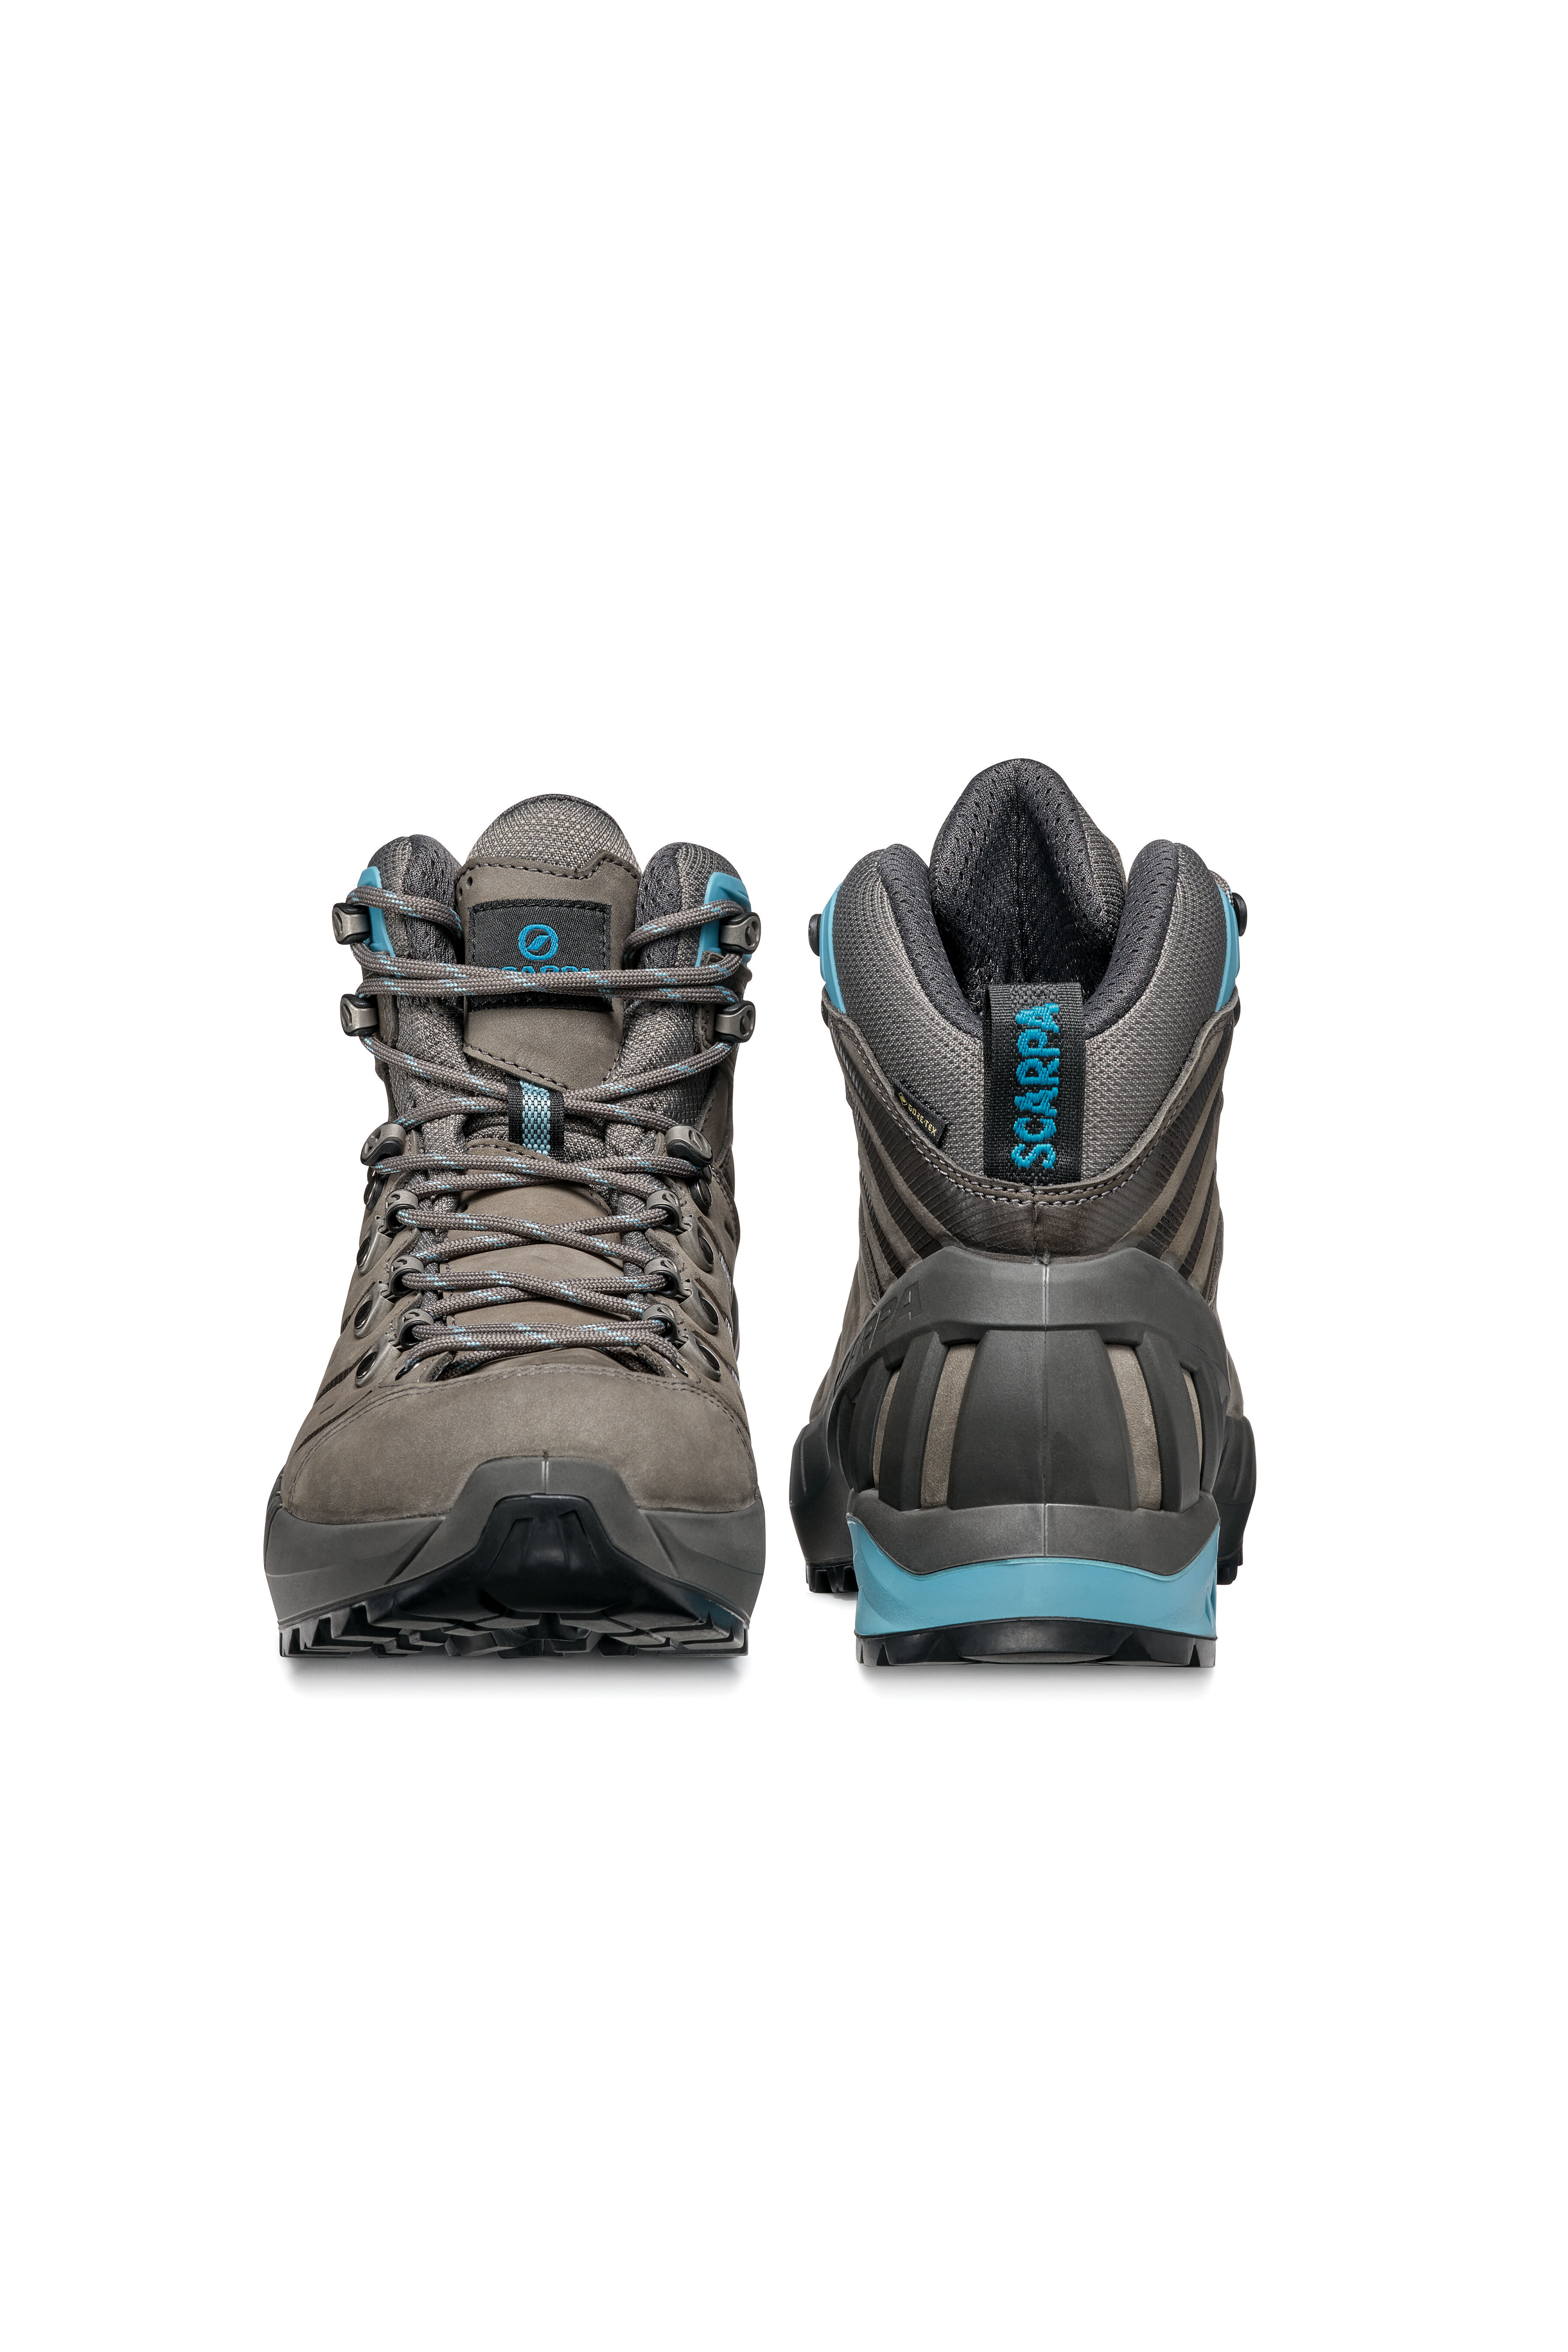 Scarpa Women's Cyclone GTX Hiking Boots | Macpac